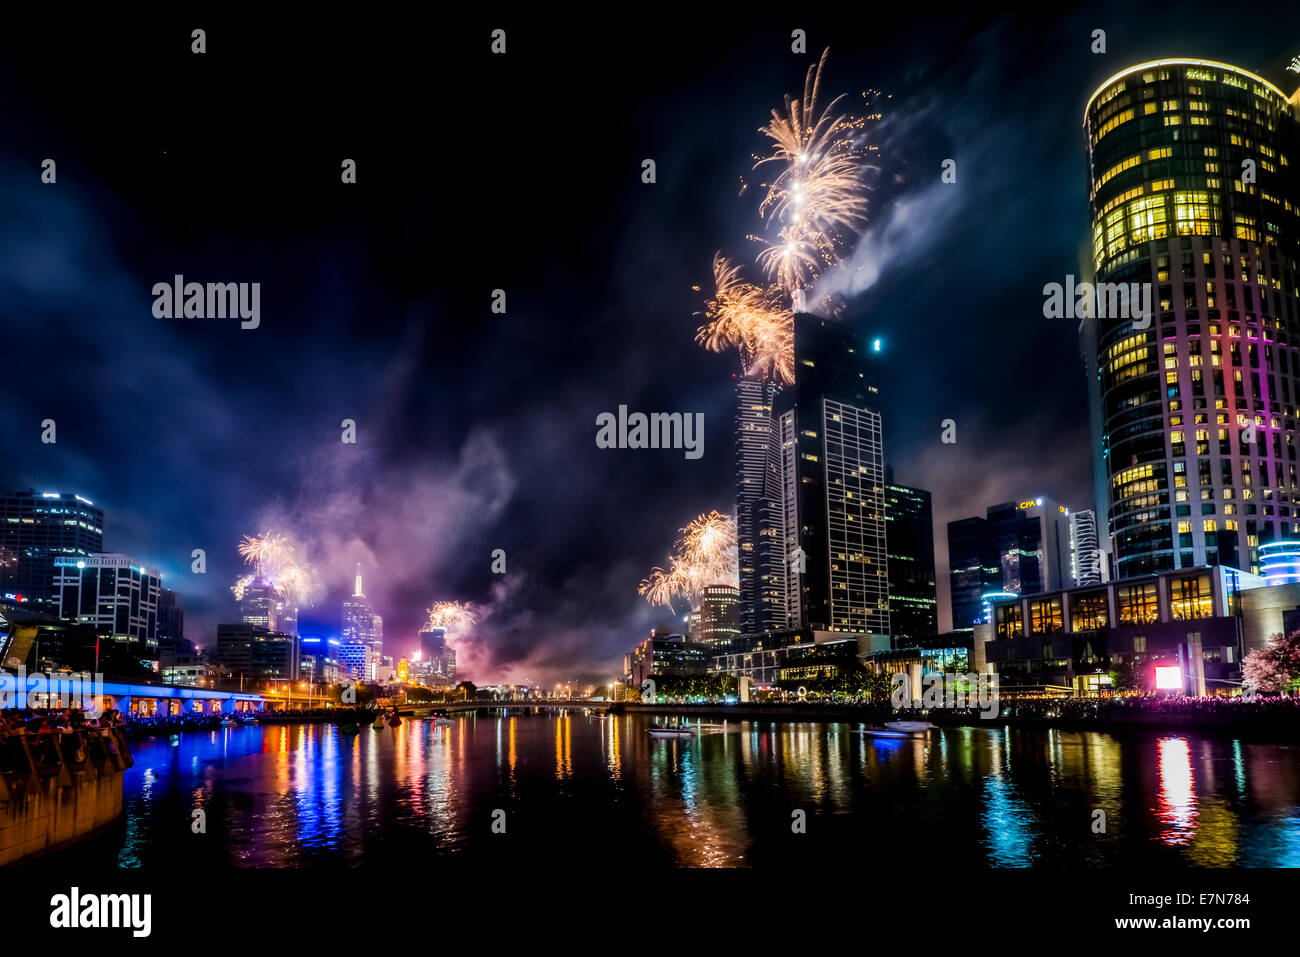 Spektakuläre Feuerwerke entlang des Yarra River Leuchten am Nachthimmel über Melbourne Australien. Stockfoto